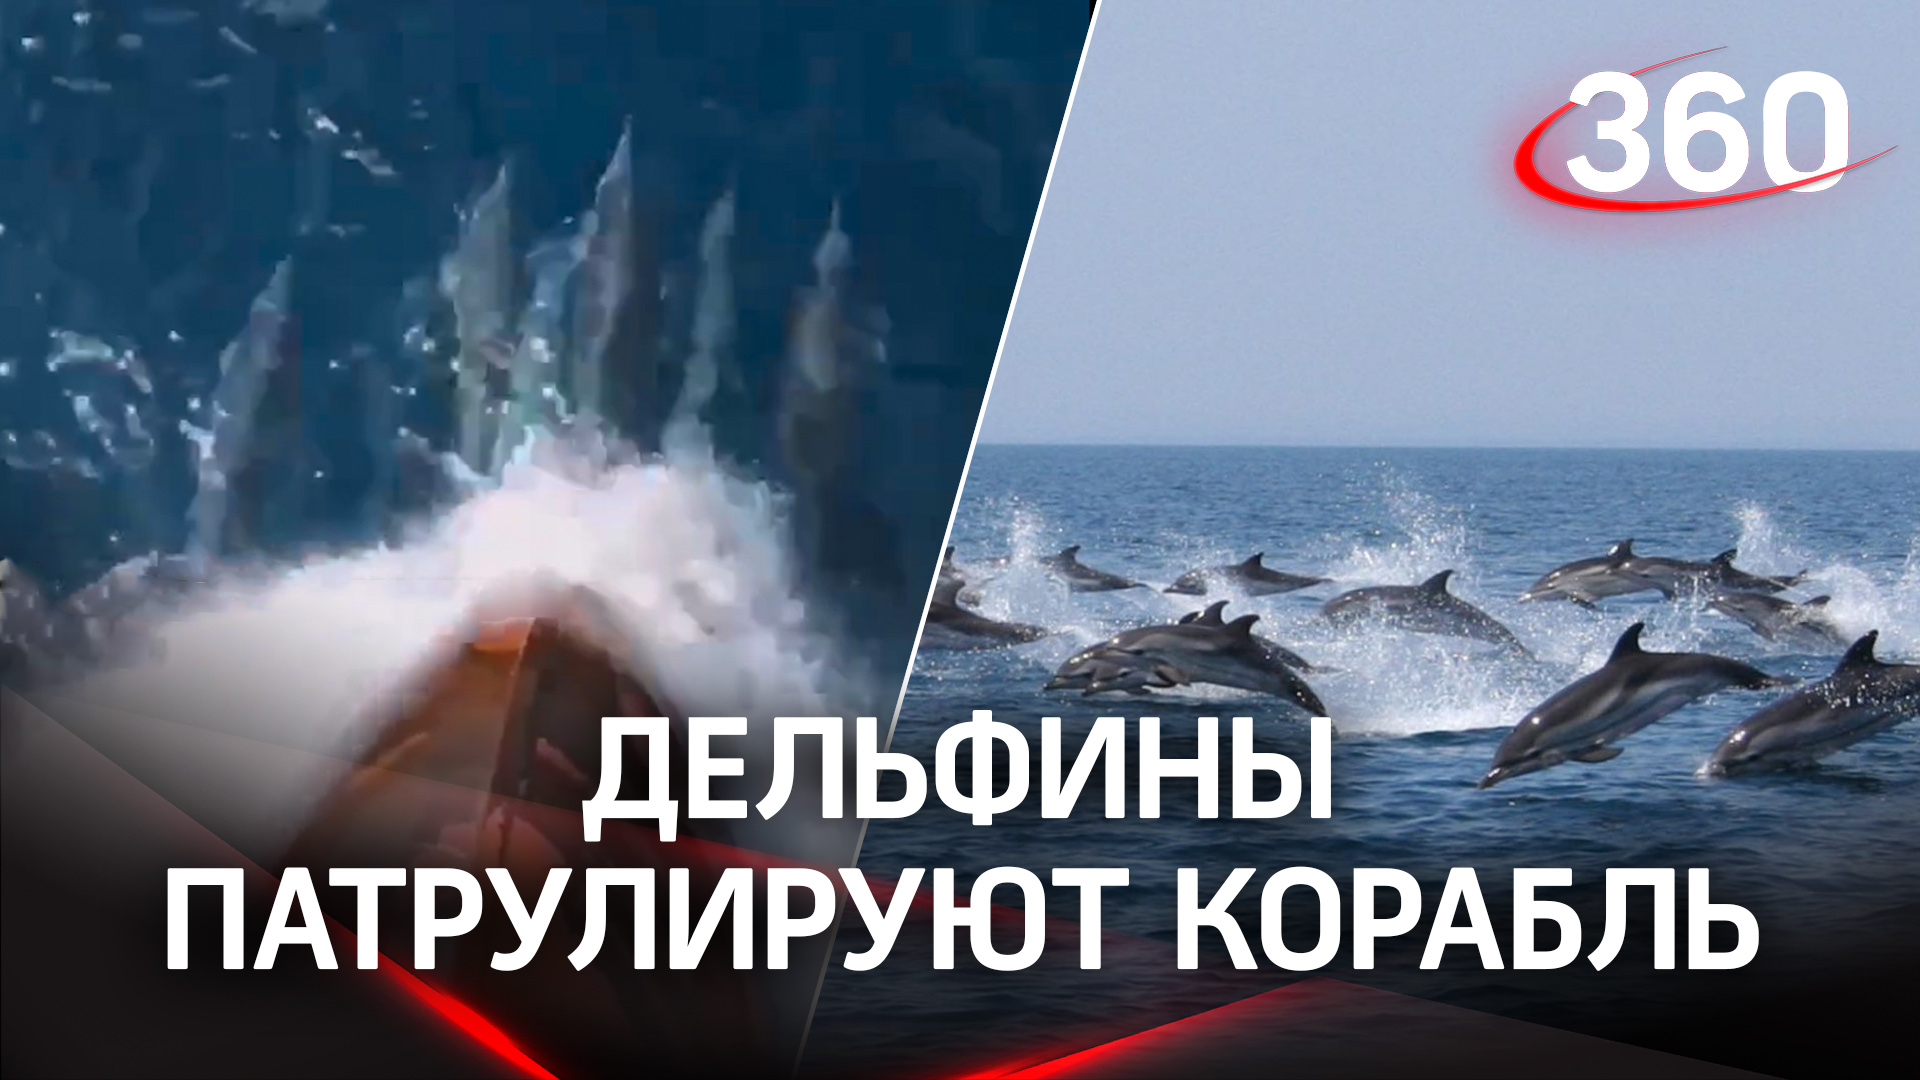 Патруль дельфинов сопровождает моряков - не страшно покорять моря